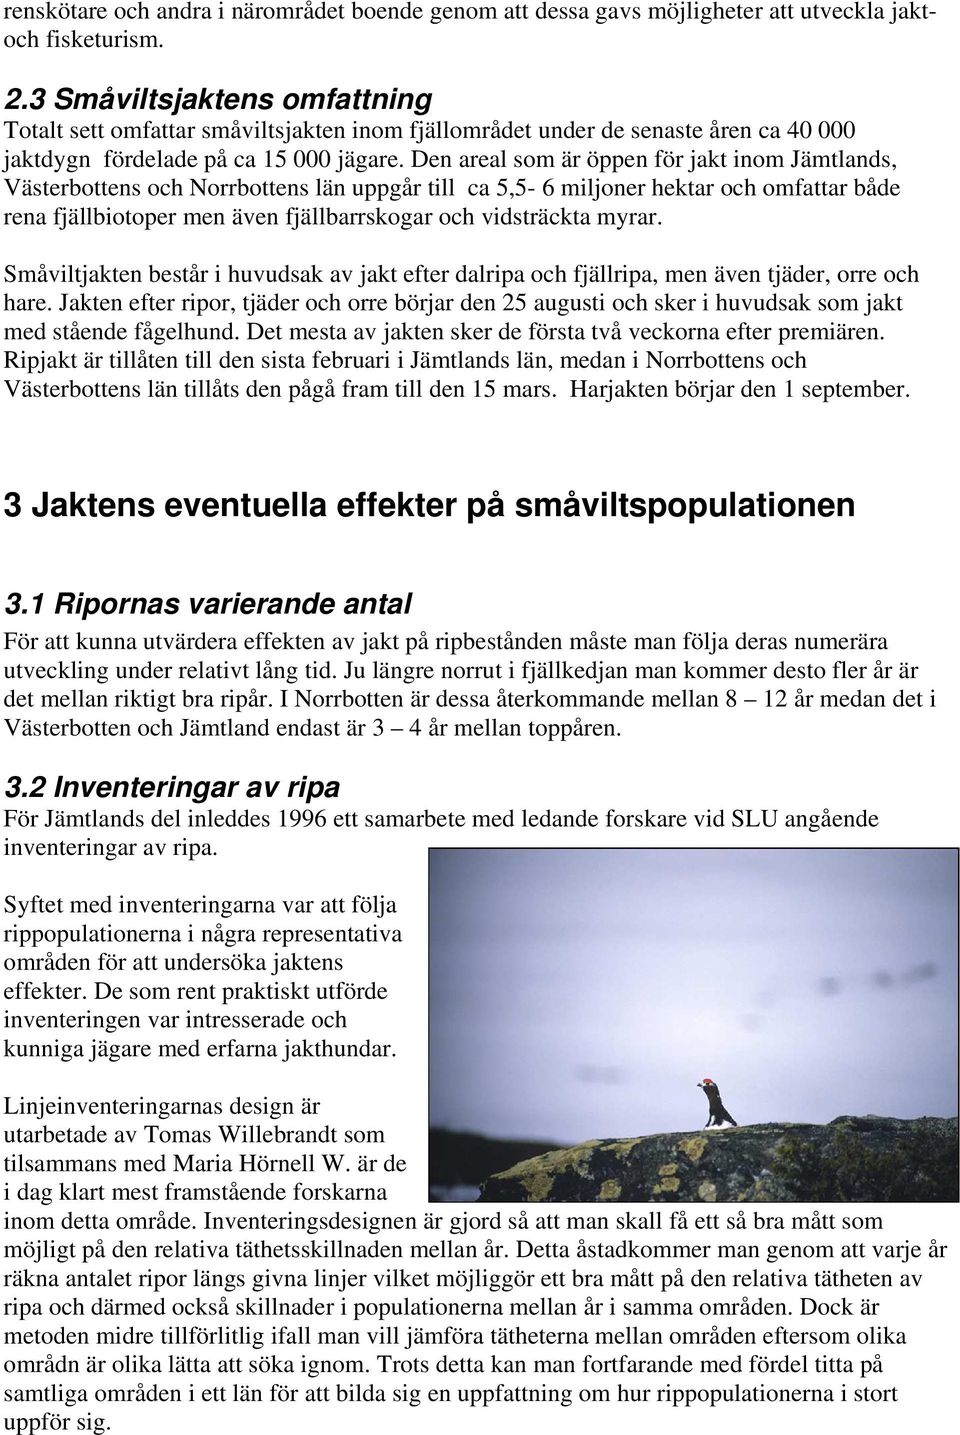 Den areal som är öppen för jakt inom Jämtlands, Västerbottens och Norrbottens län uppgår till ca 5,5-6 miljoner hektar och omfattar både rena fjällbiotoper men även fjällbarrskogar och vidsträckta